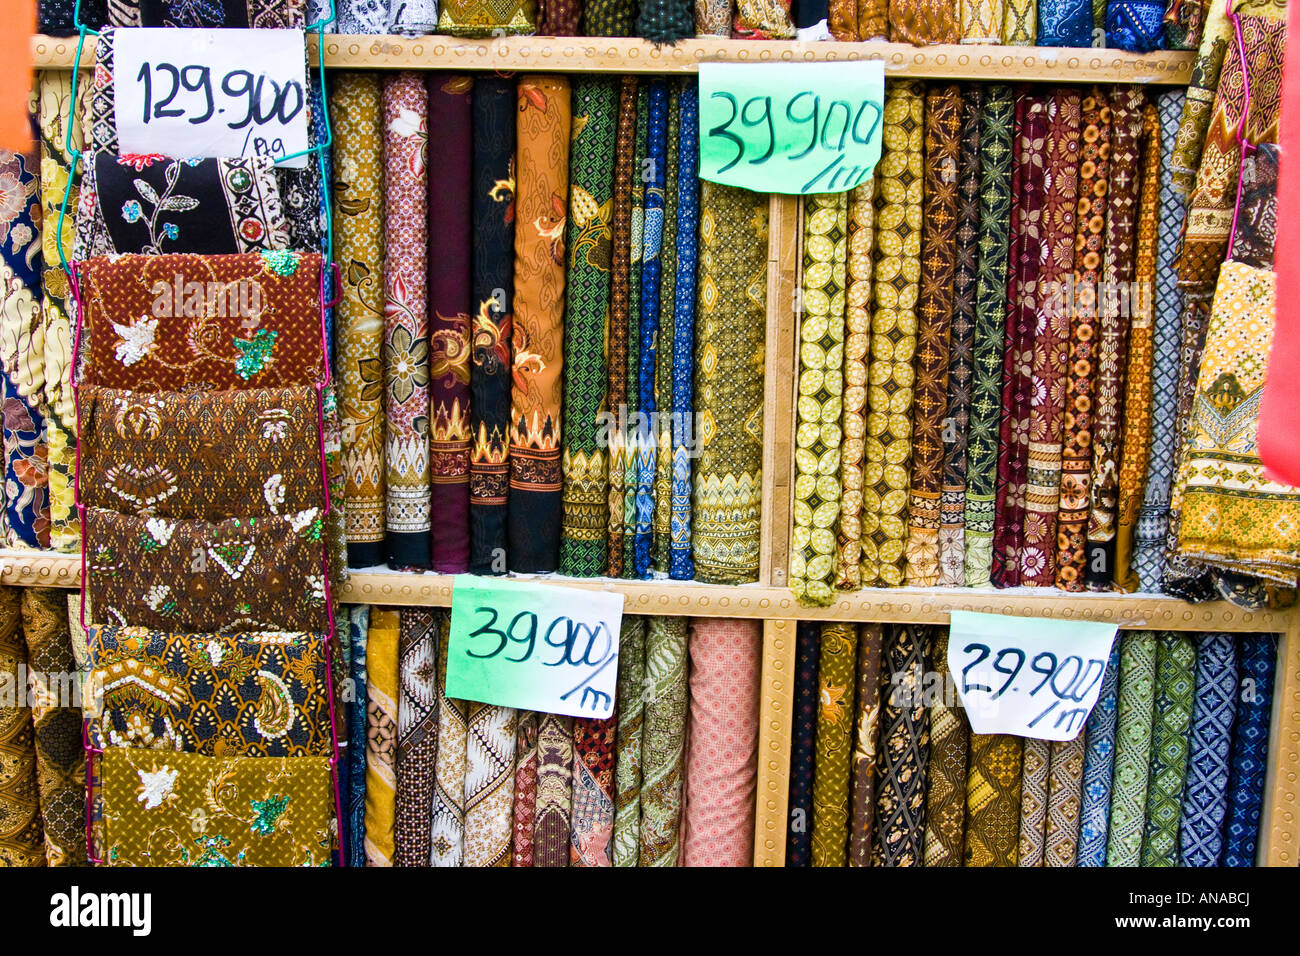 Batik Stoff und Bekleidungsgeschäft Yogyakarta Java Indonesien  Stockfotografie - Alamy